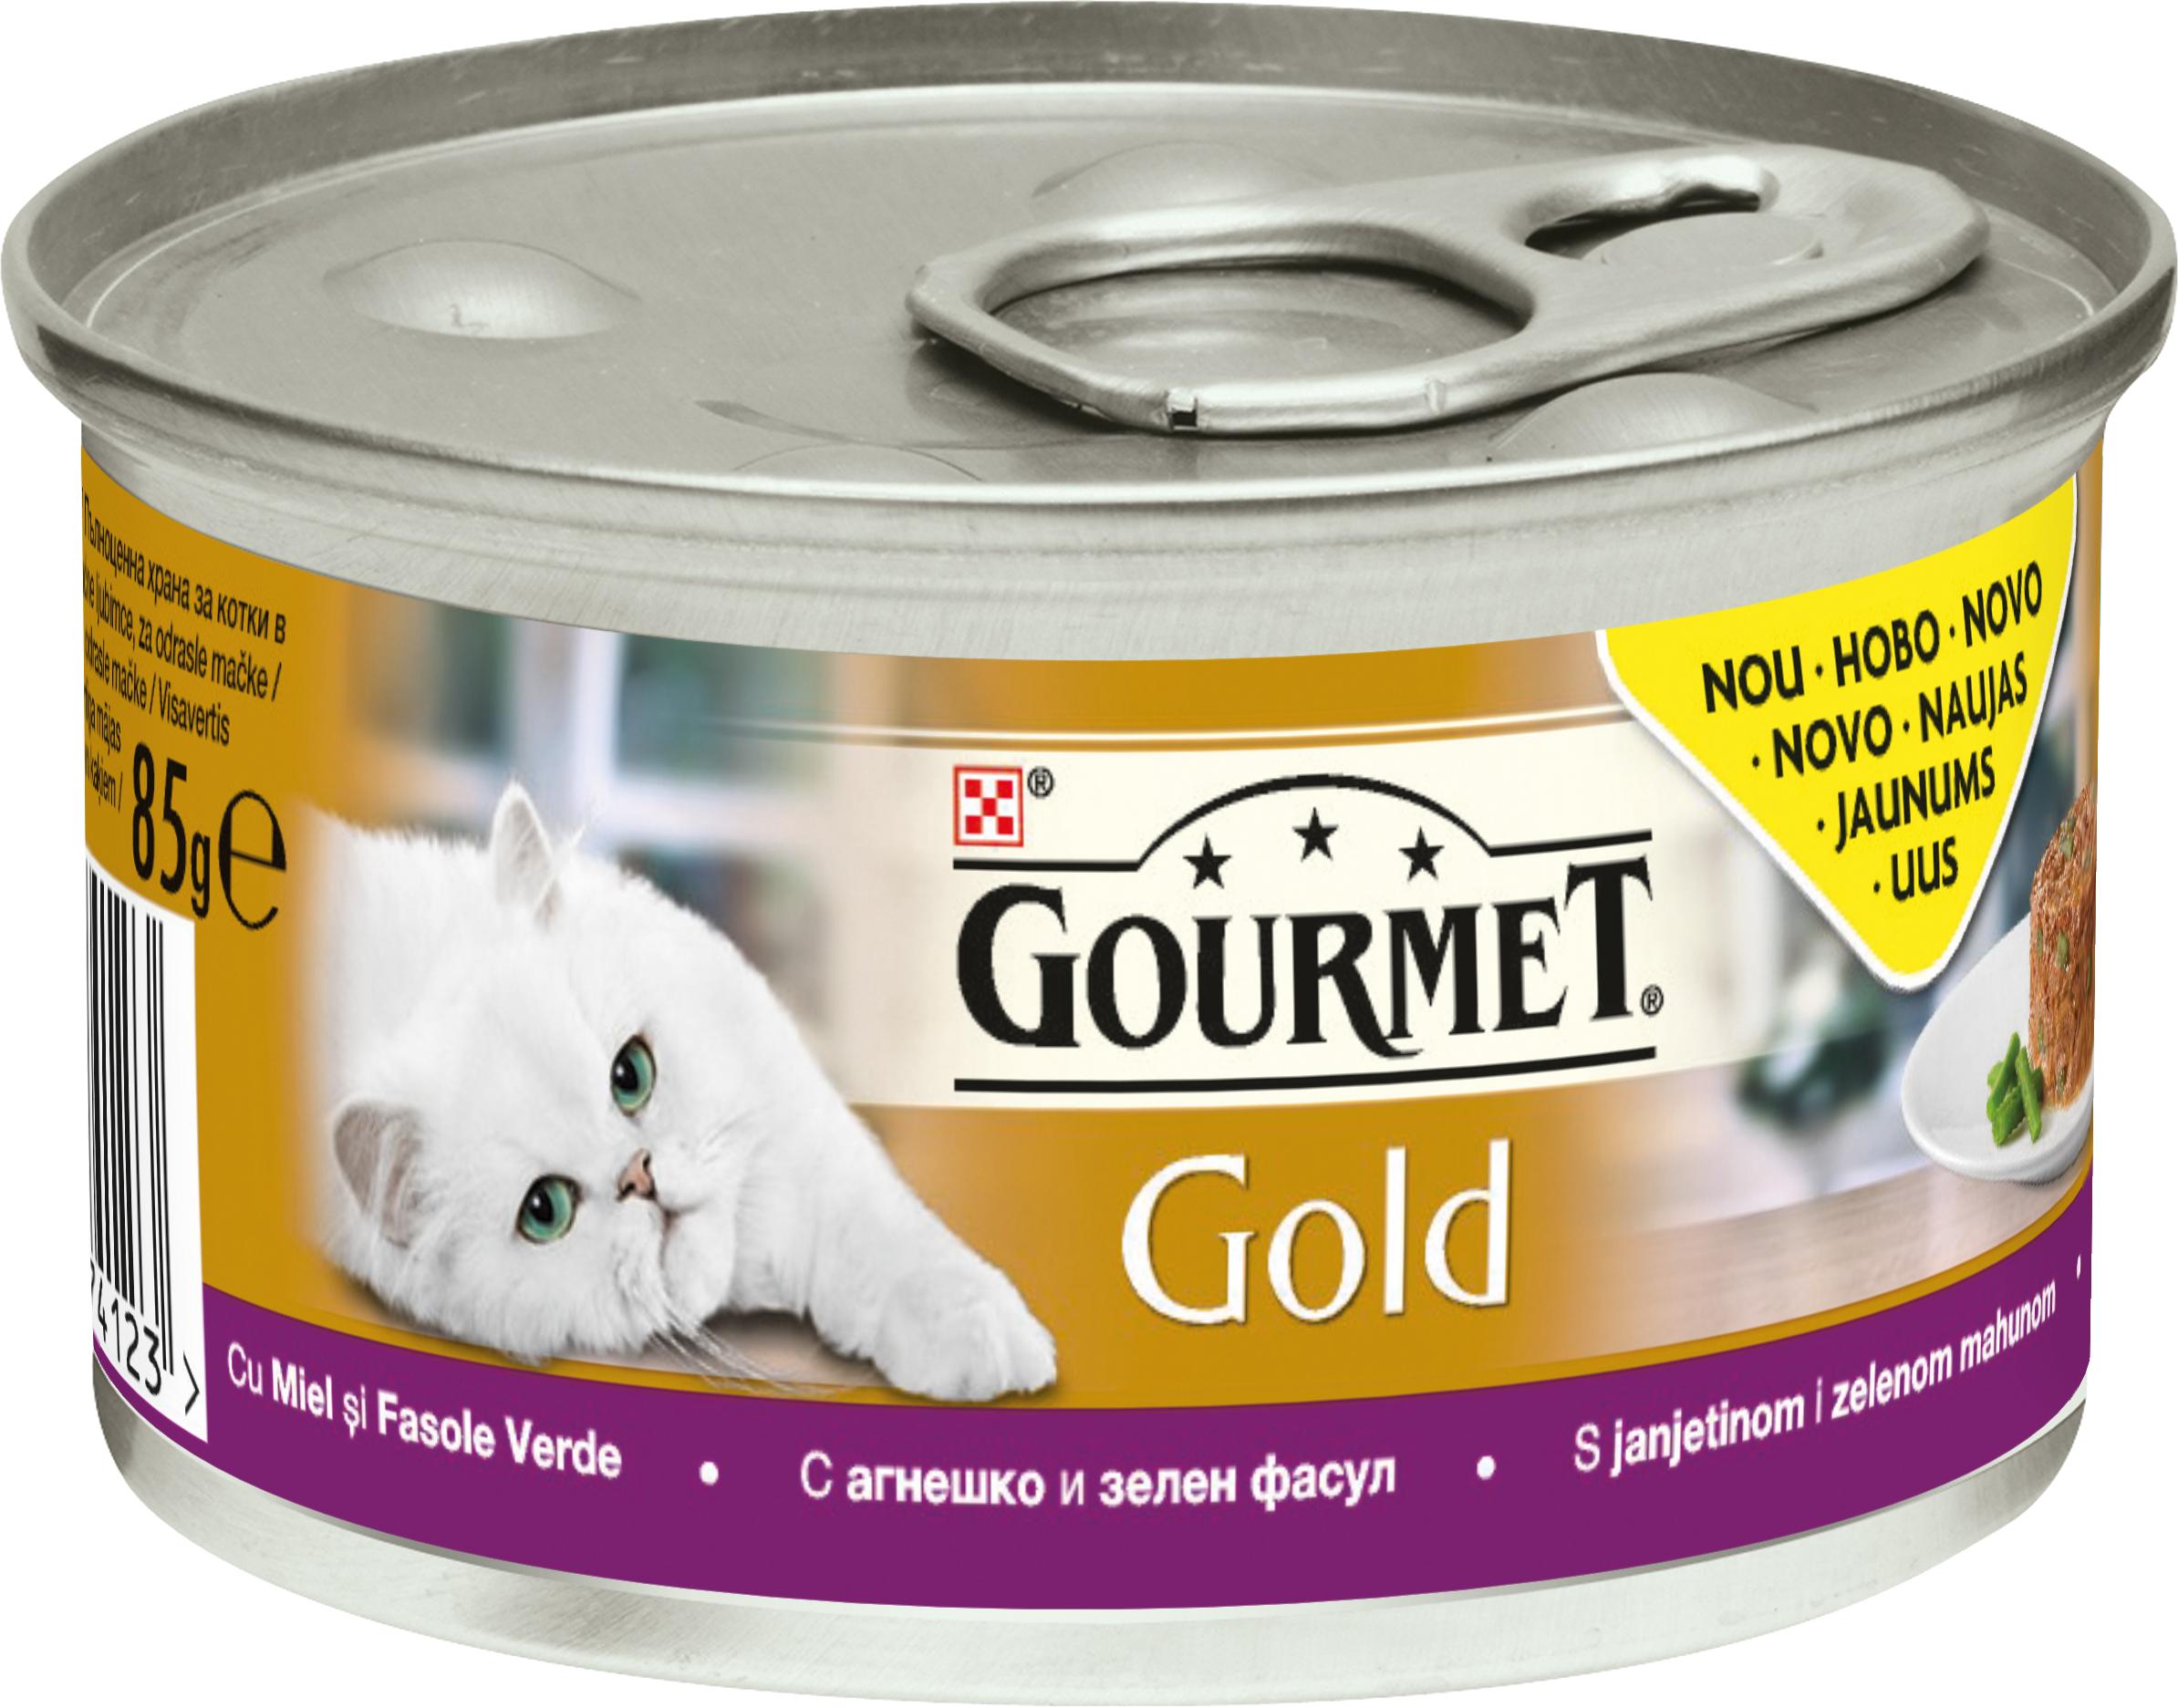 Slika za Hrana za mačke Gourmet Gold savory cake jagnjetina 85g